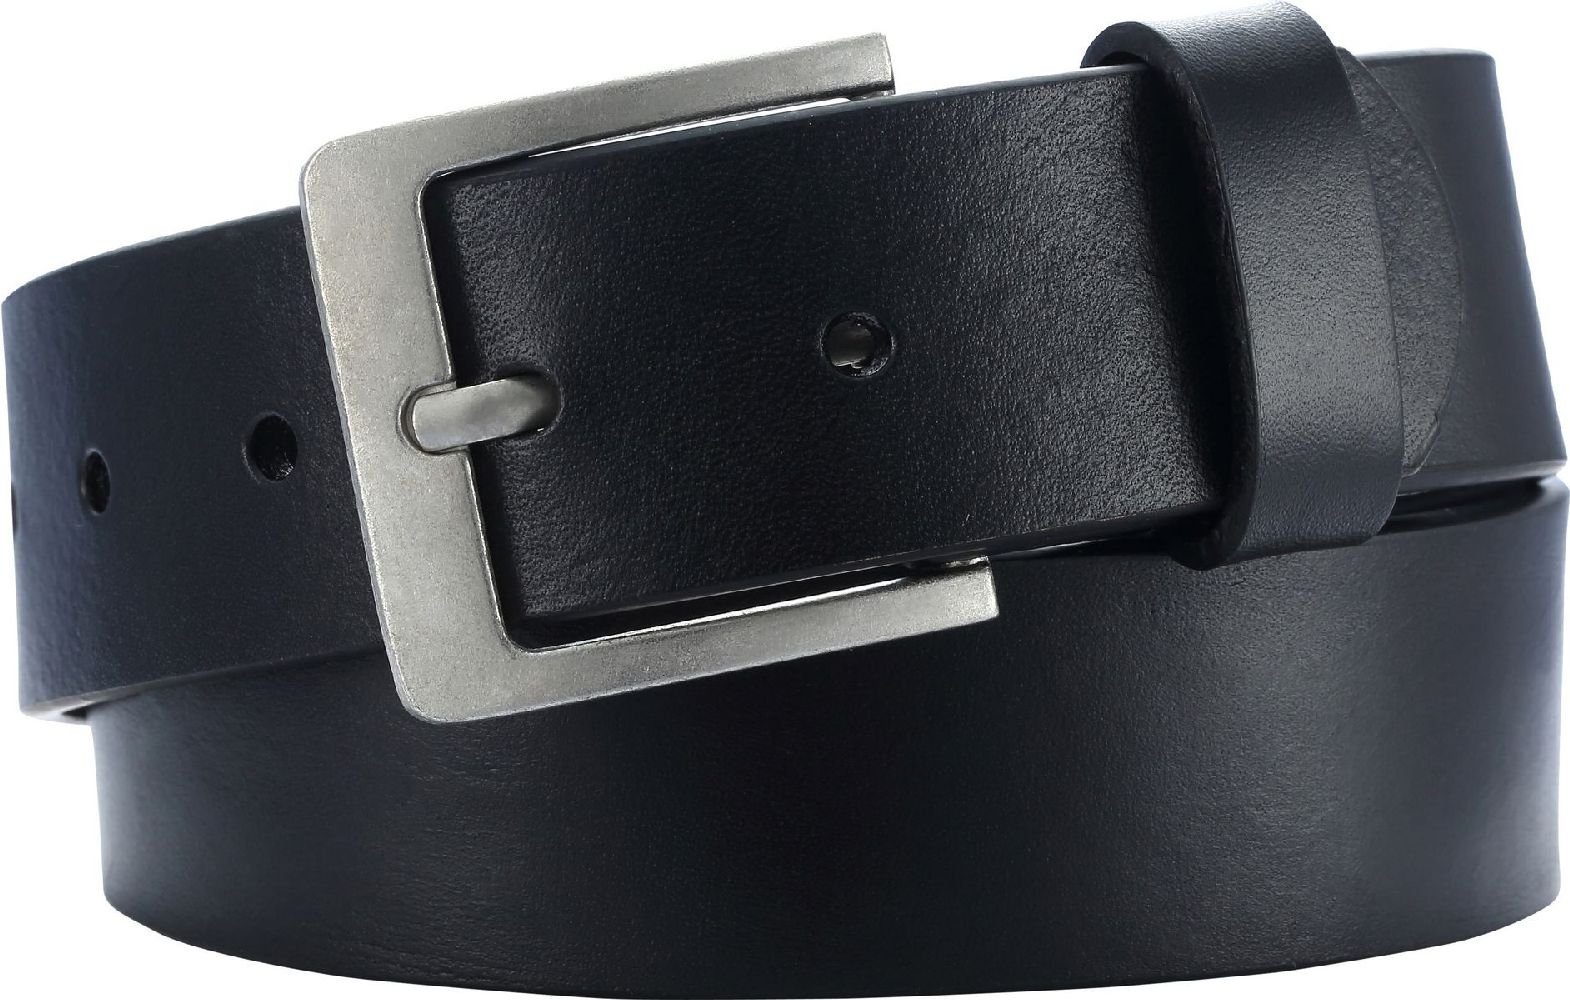 Playshoes Lederhandschuhe Leder-Gürtel mm 30 Breite